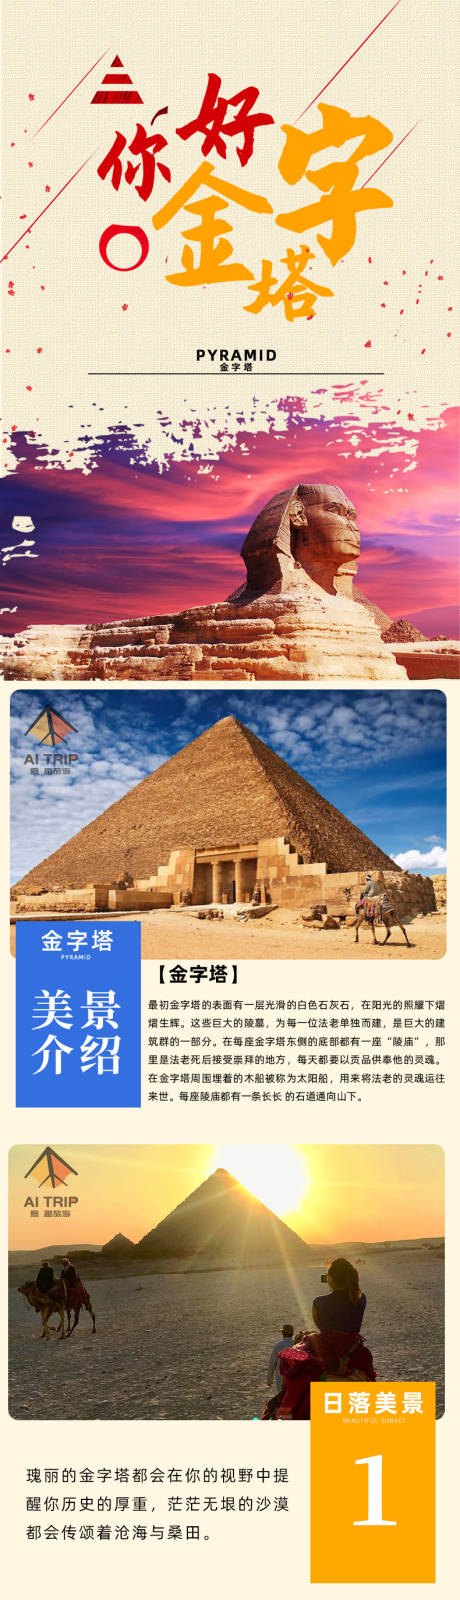 金字塔旅游详情页